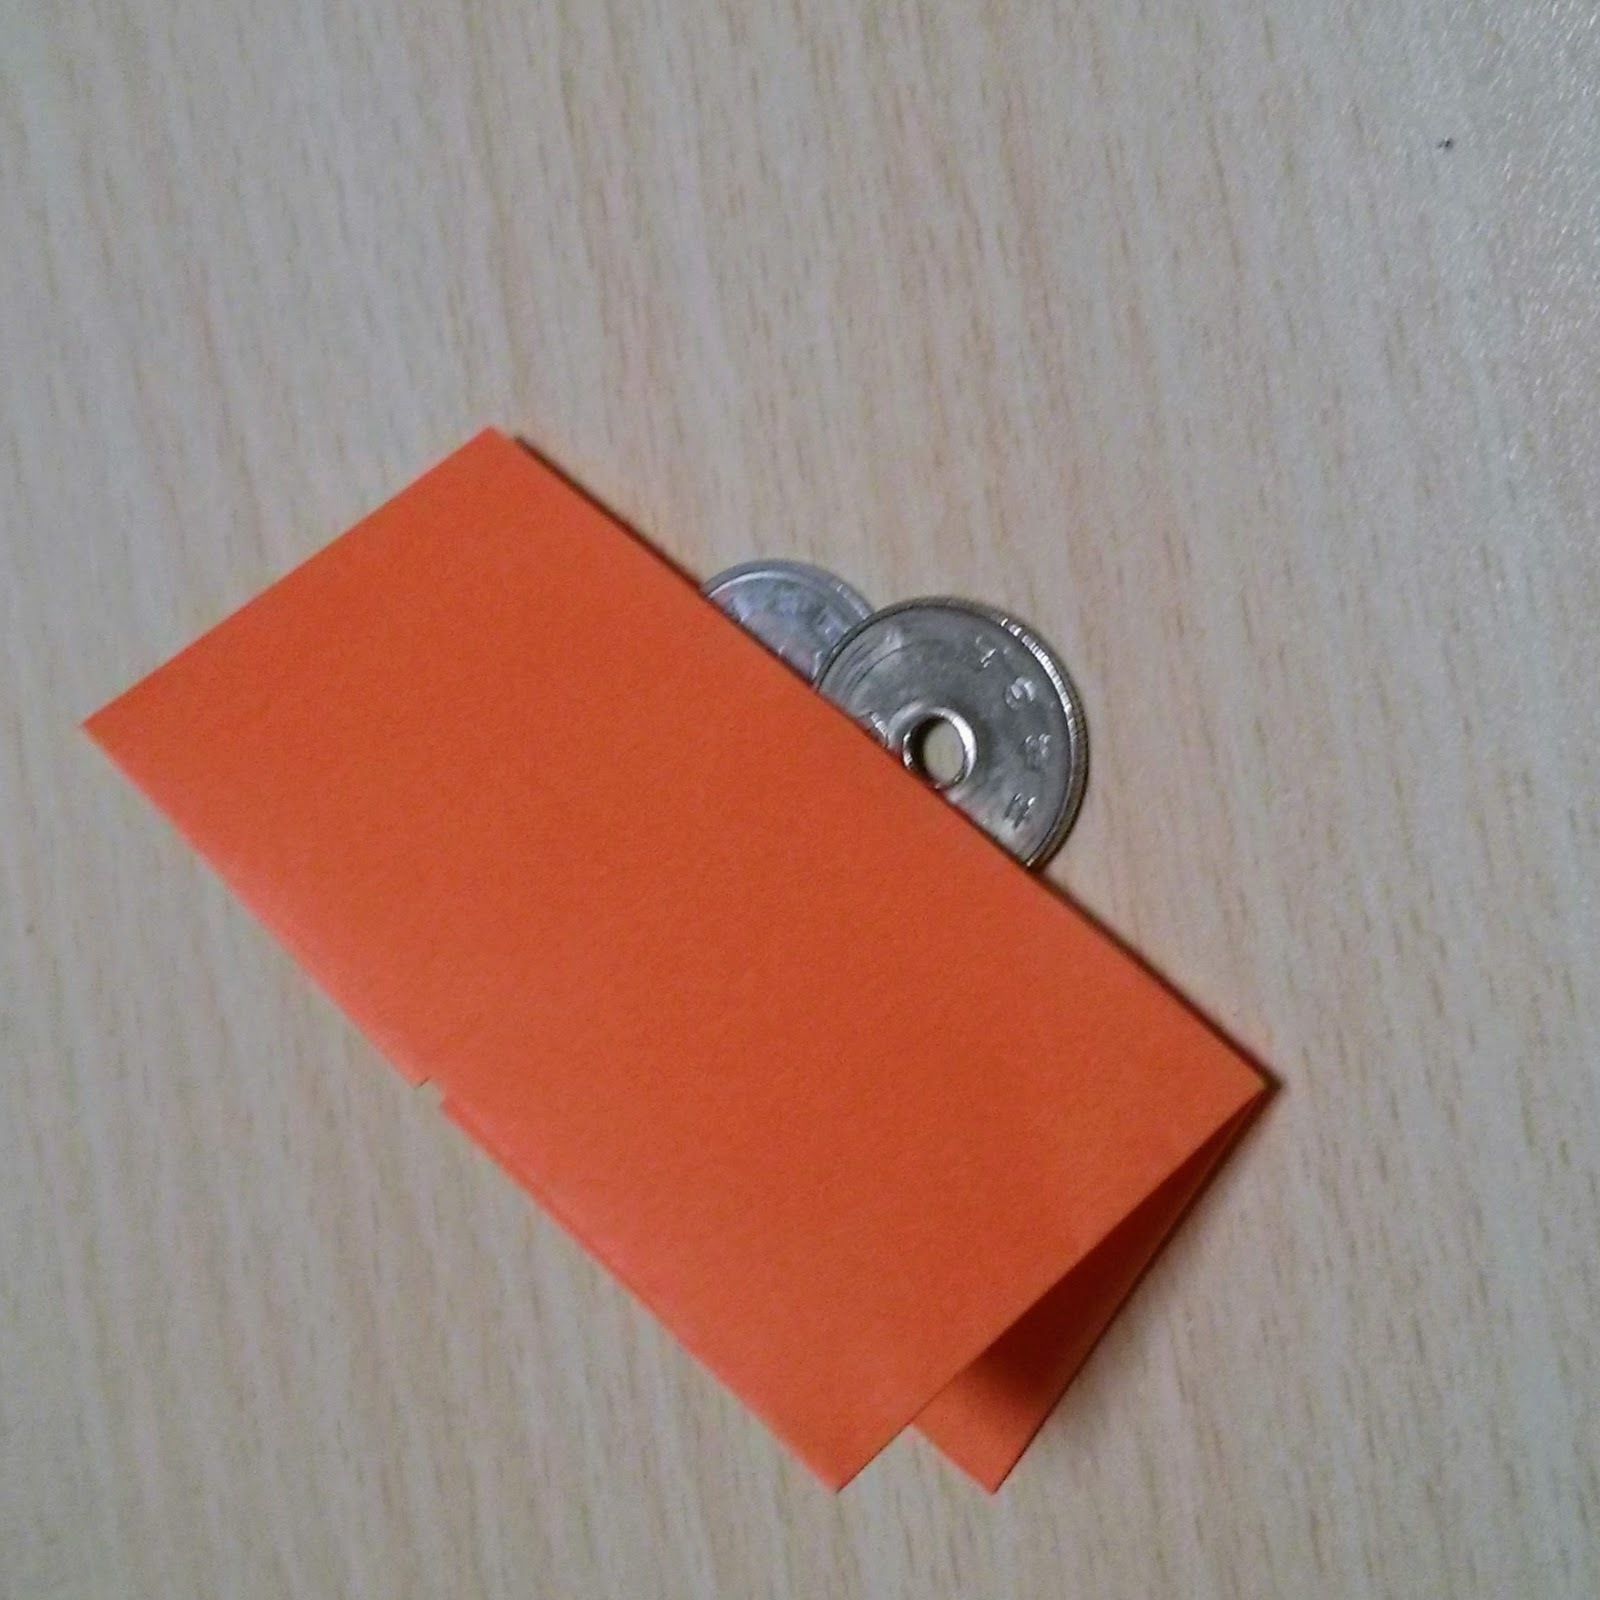 折り紙で簡単に作れる お財布の作り方8選 お札や小銭入れなど実用的な折り方も 暮らし の